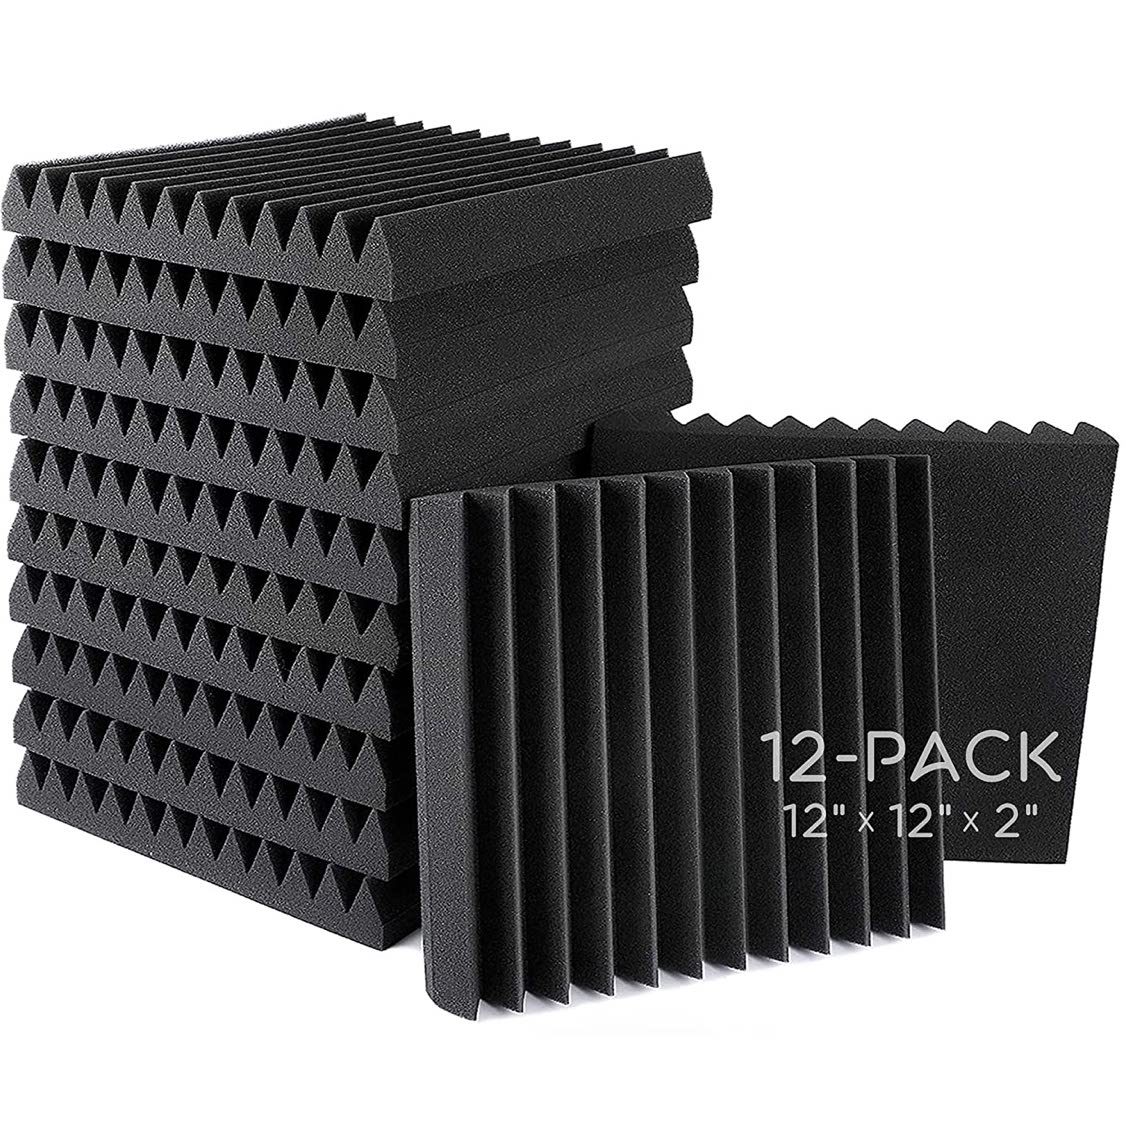 Acoustic Panels, 2" X 12" X 12" Acoustic Foam Panels, Studio Wedge Tiles, Sound Panels wedges 12 Pack, Black - Kalena